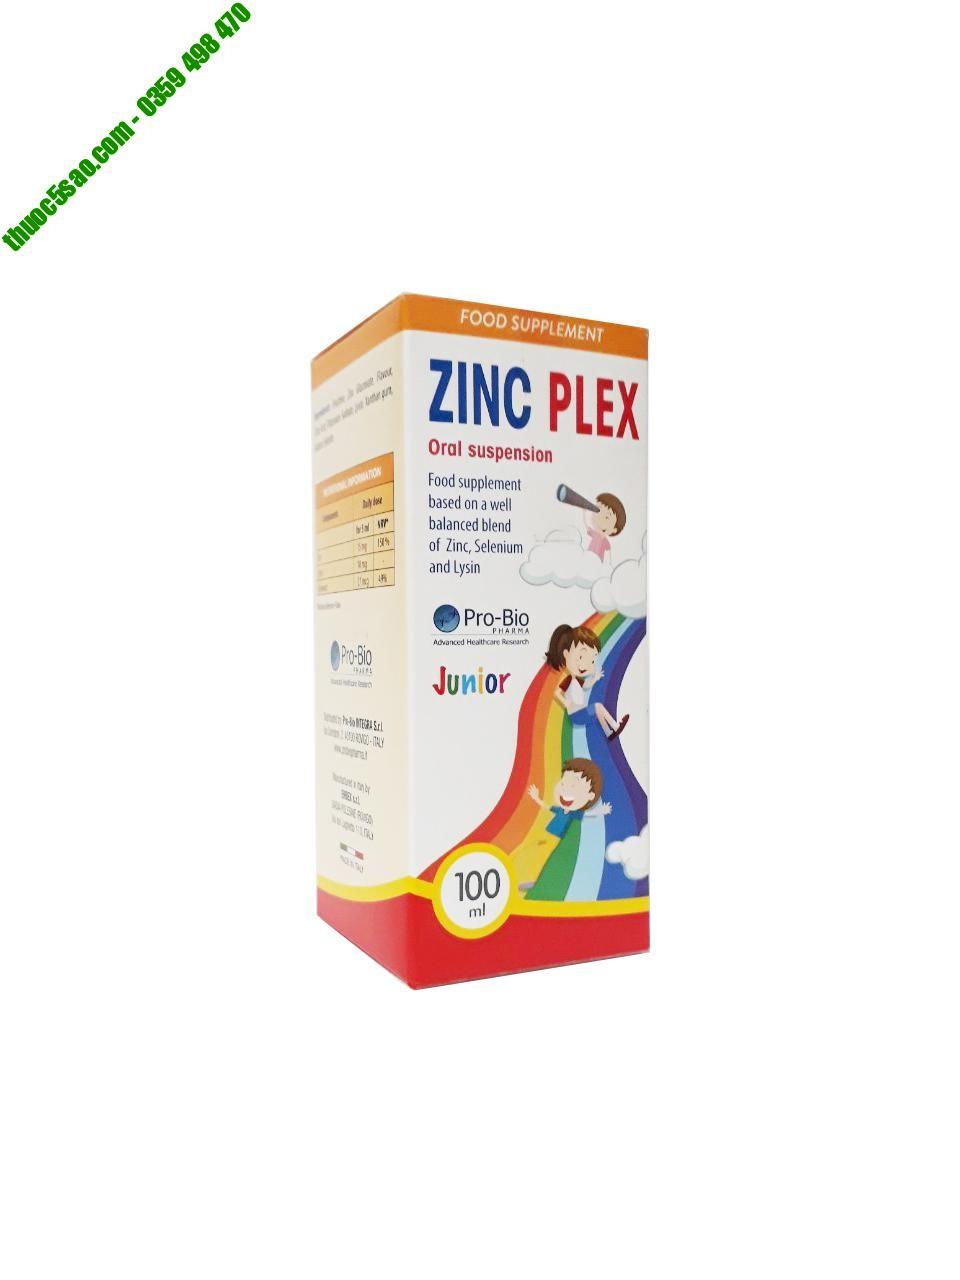 ZinC Plex bổ sung kẽm, Selen, Lysin – Hỗ trợ chuyển hóa chất ở trẻ